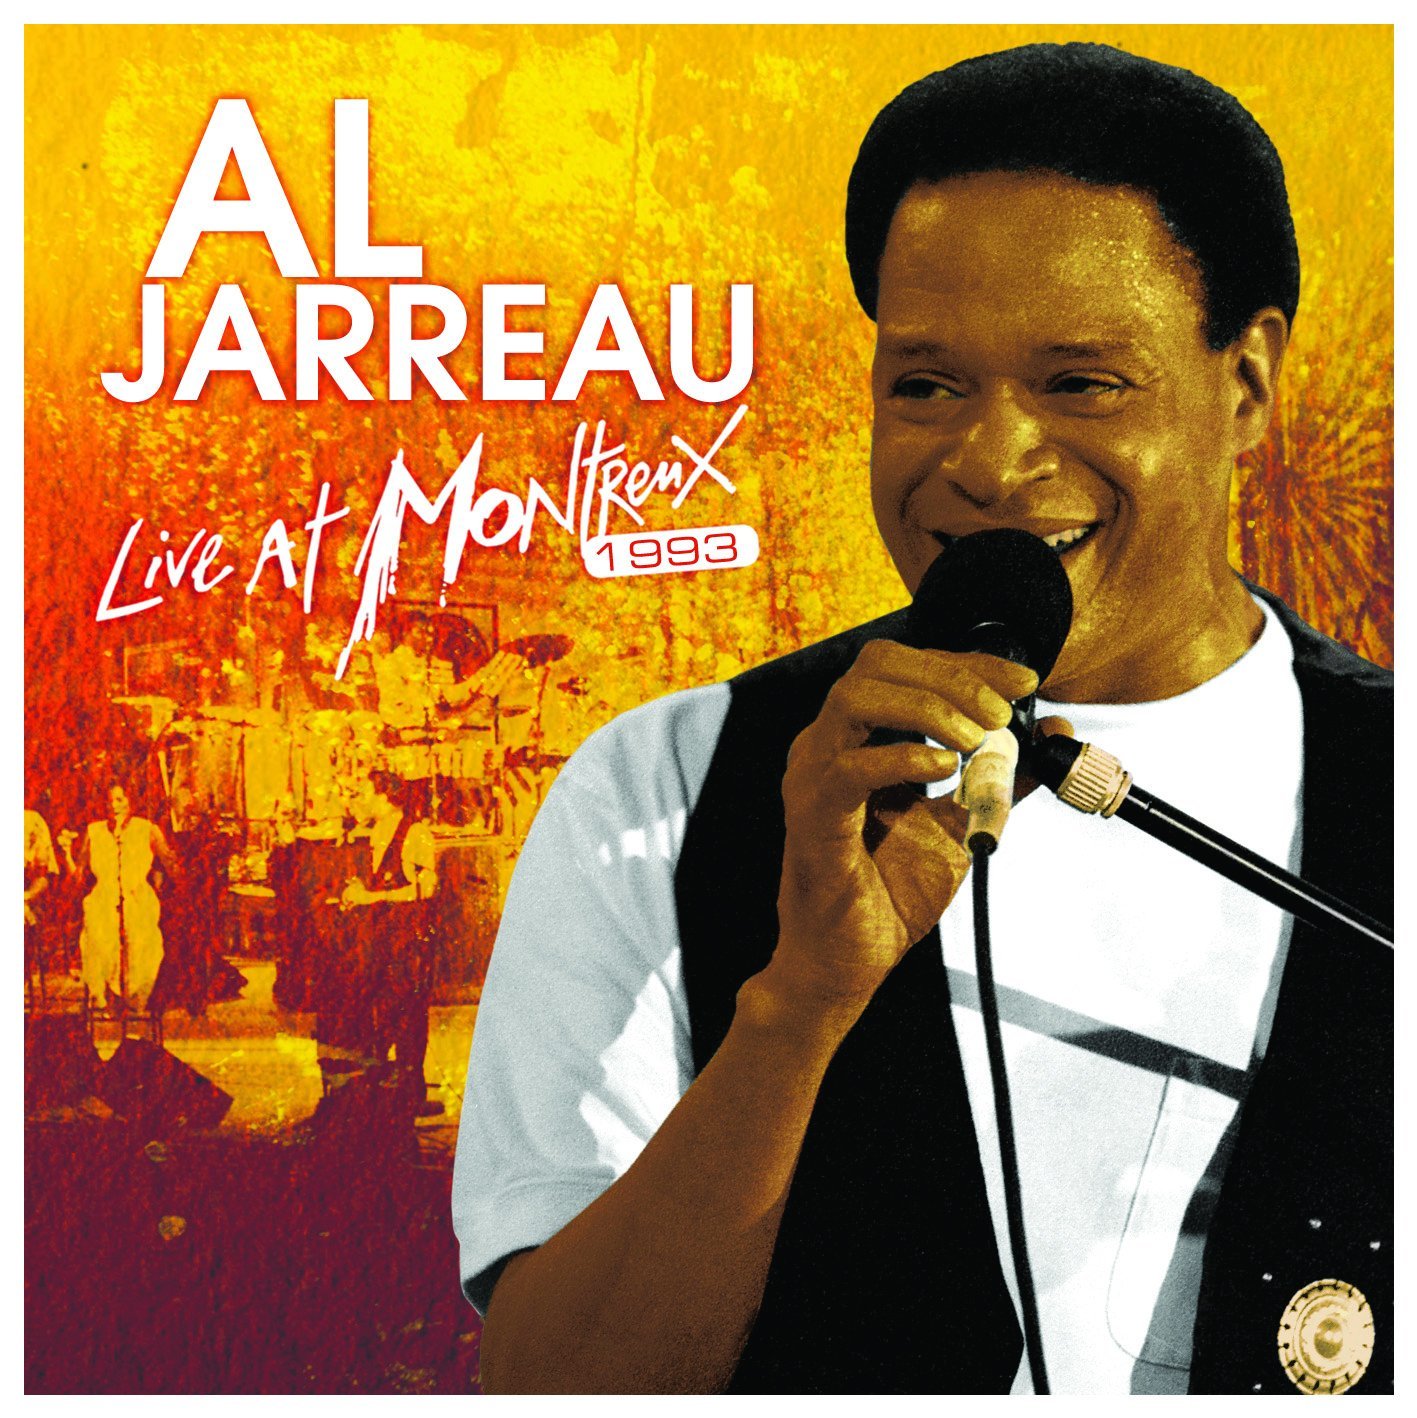 AL JARREAU - Live At Montreux 1993 cover 